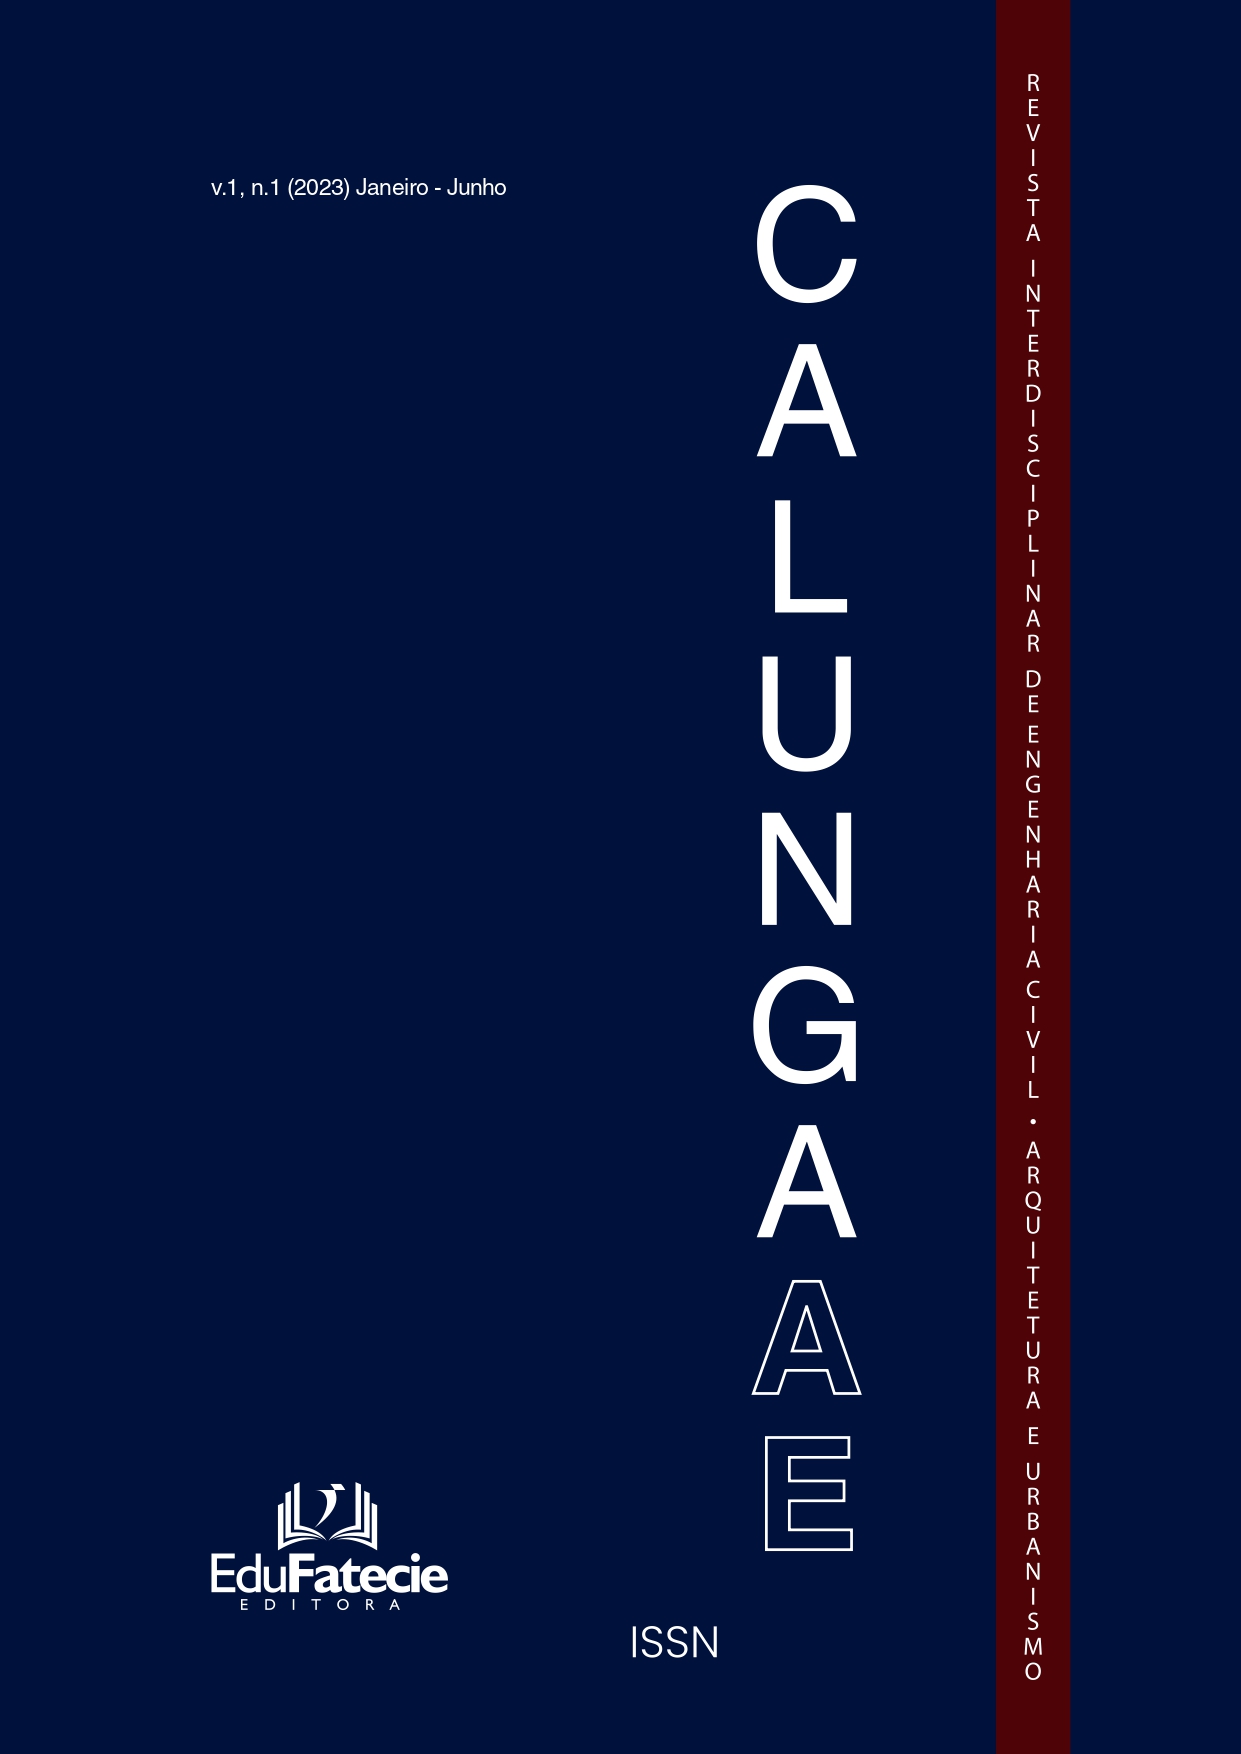 					Visualizar v. 1 n. 1 (2023): Calunga AE - Revista Interdisciplinar de Engenharia Civil, Arquitetura e Urbanismo
				